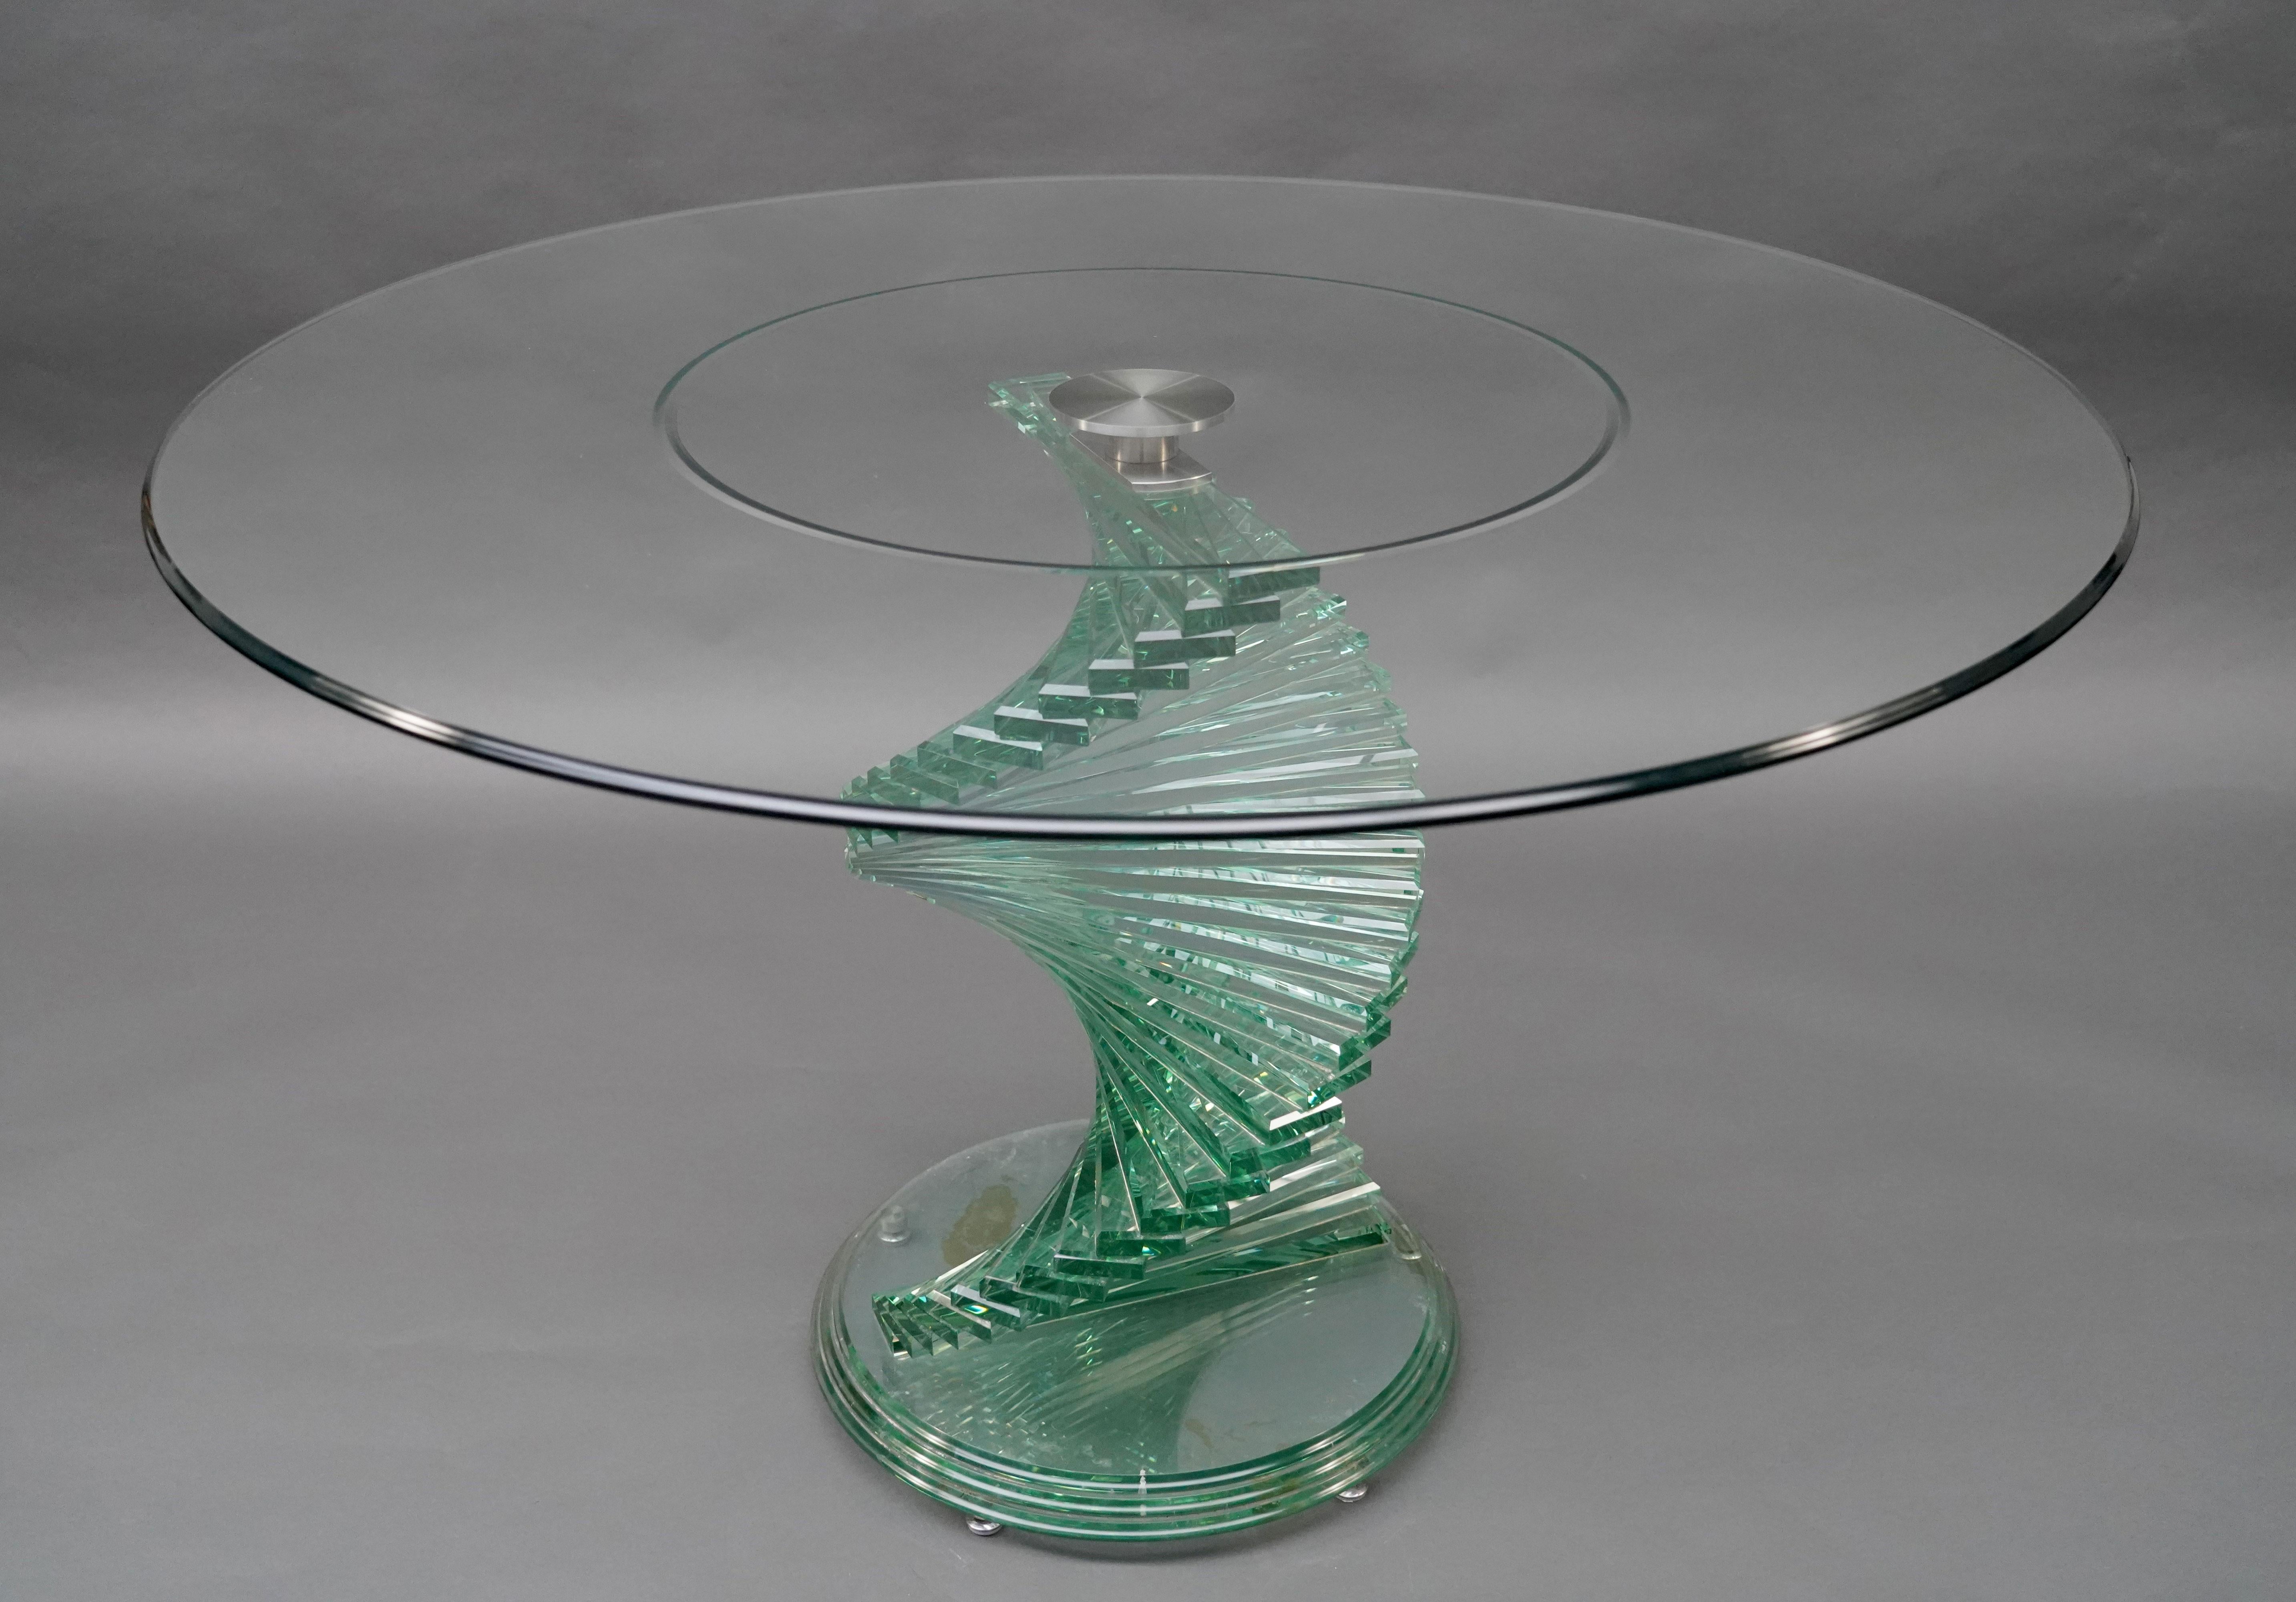 Schöner ovaler Vintage-Tisch im Stil von Danny Lane's, aus gestapeltem Glas mit abnehmbarer Platte. 
Das einzigartige Design des spiralförmigen Tischbeins mit sorgfältig gestapelten Glasrechtecken sorgt für eine auffallende Ästhetik. 
Der ovale